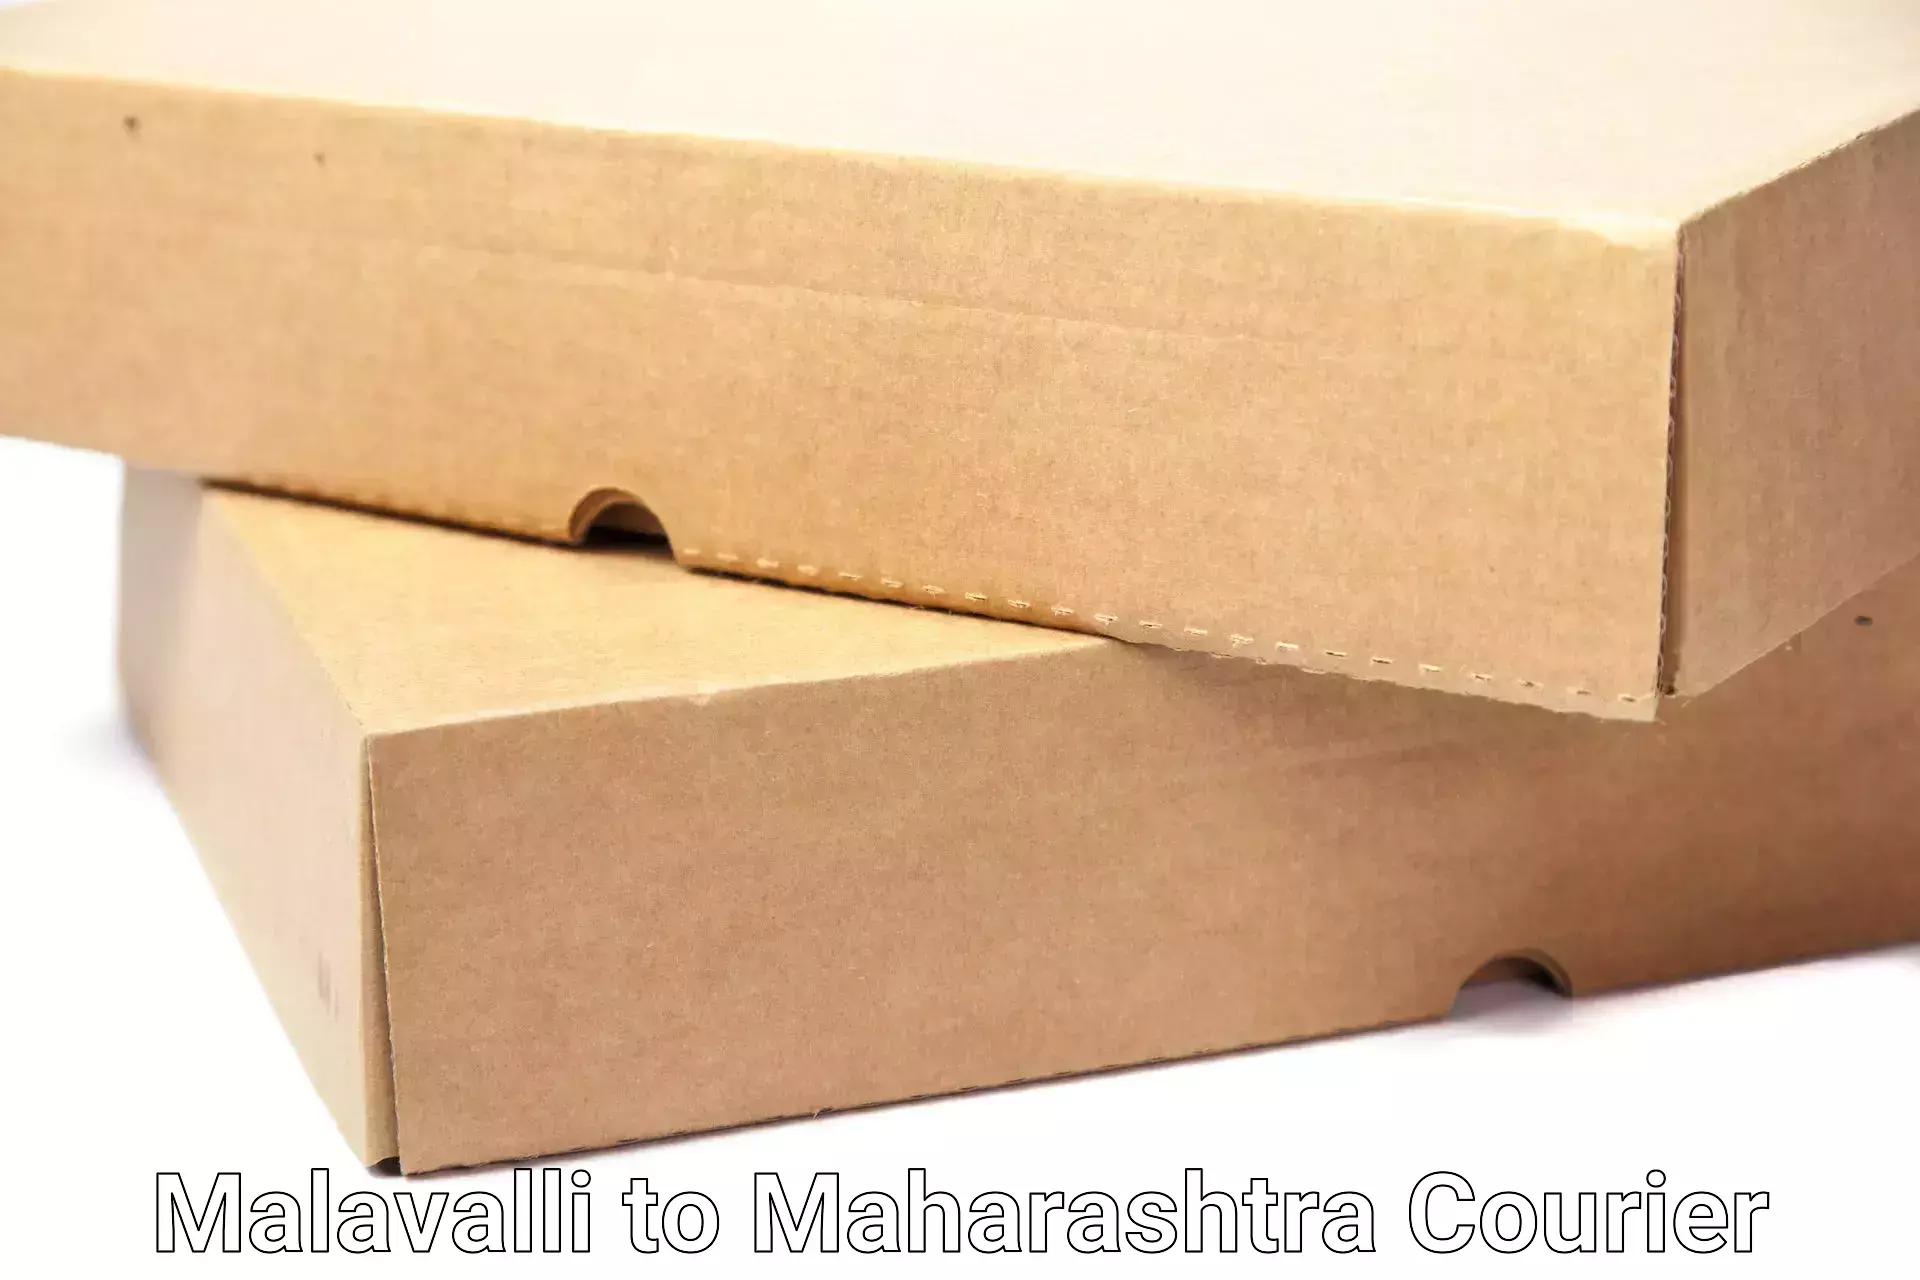 Residential moving experts Malavalli to Lanja